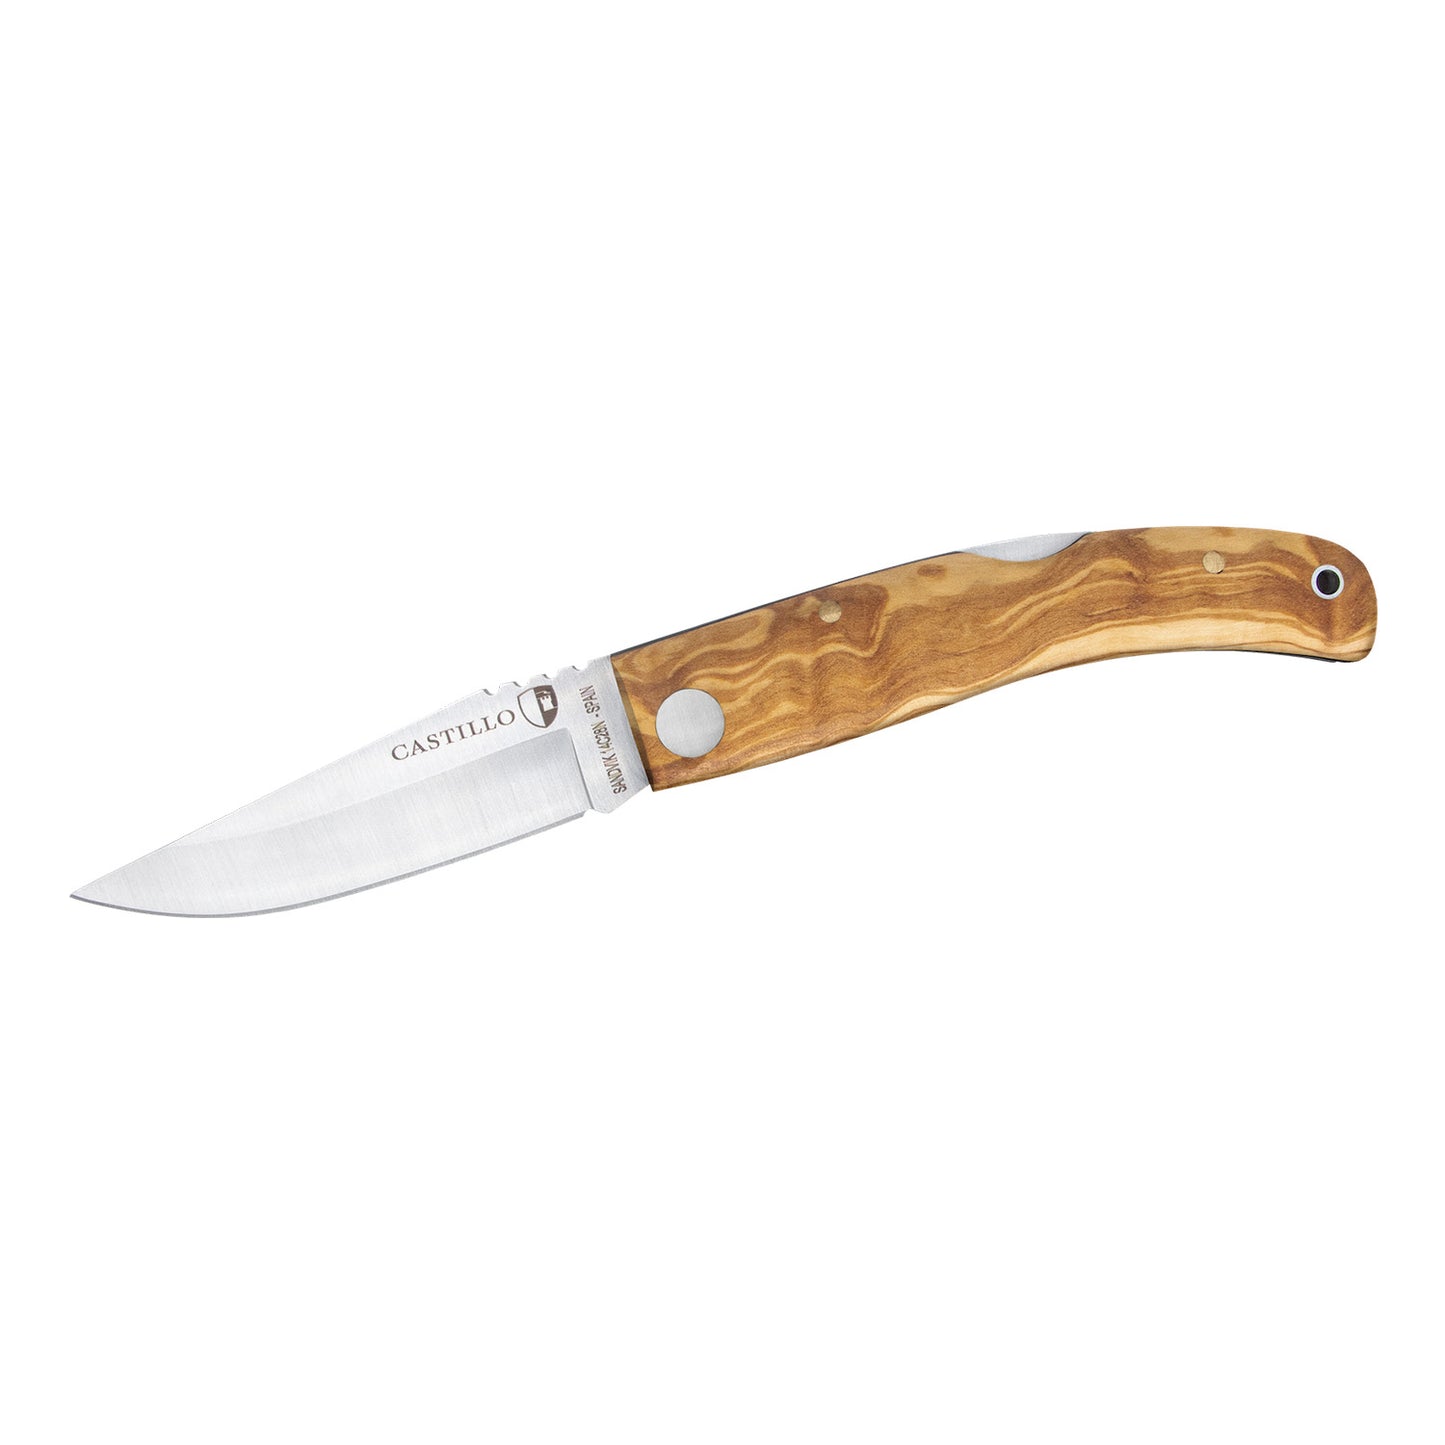 The Navaja Knife-Olive Wood